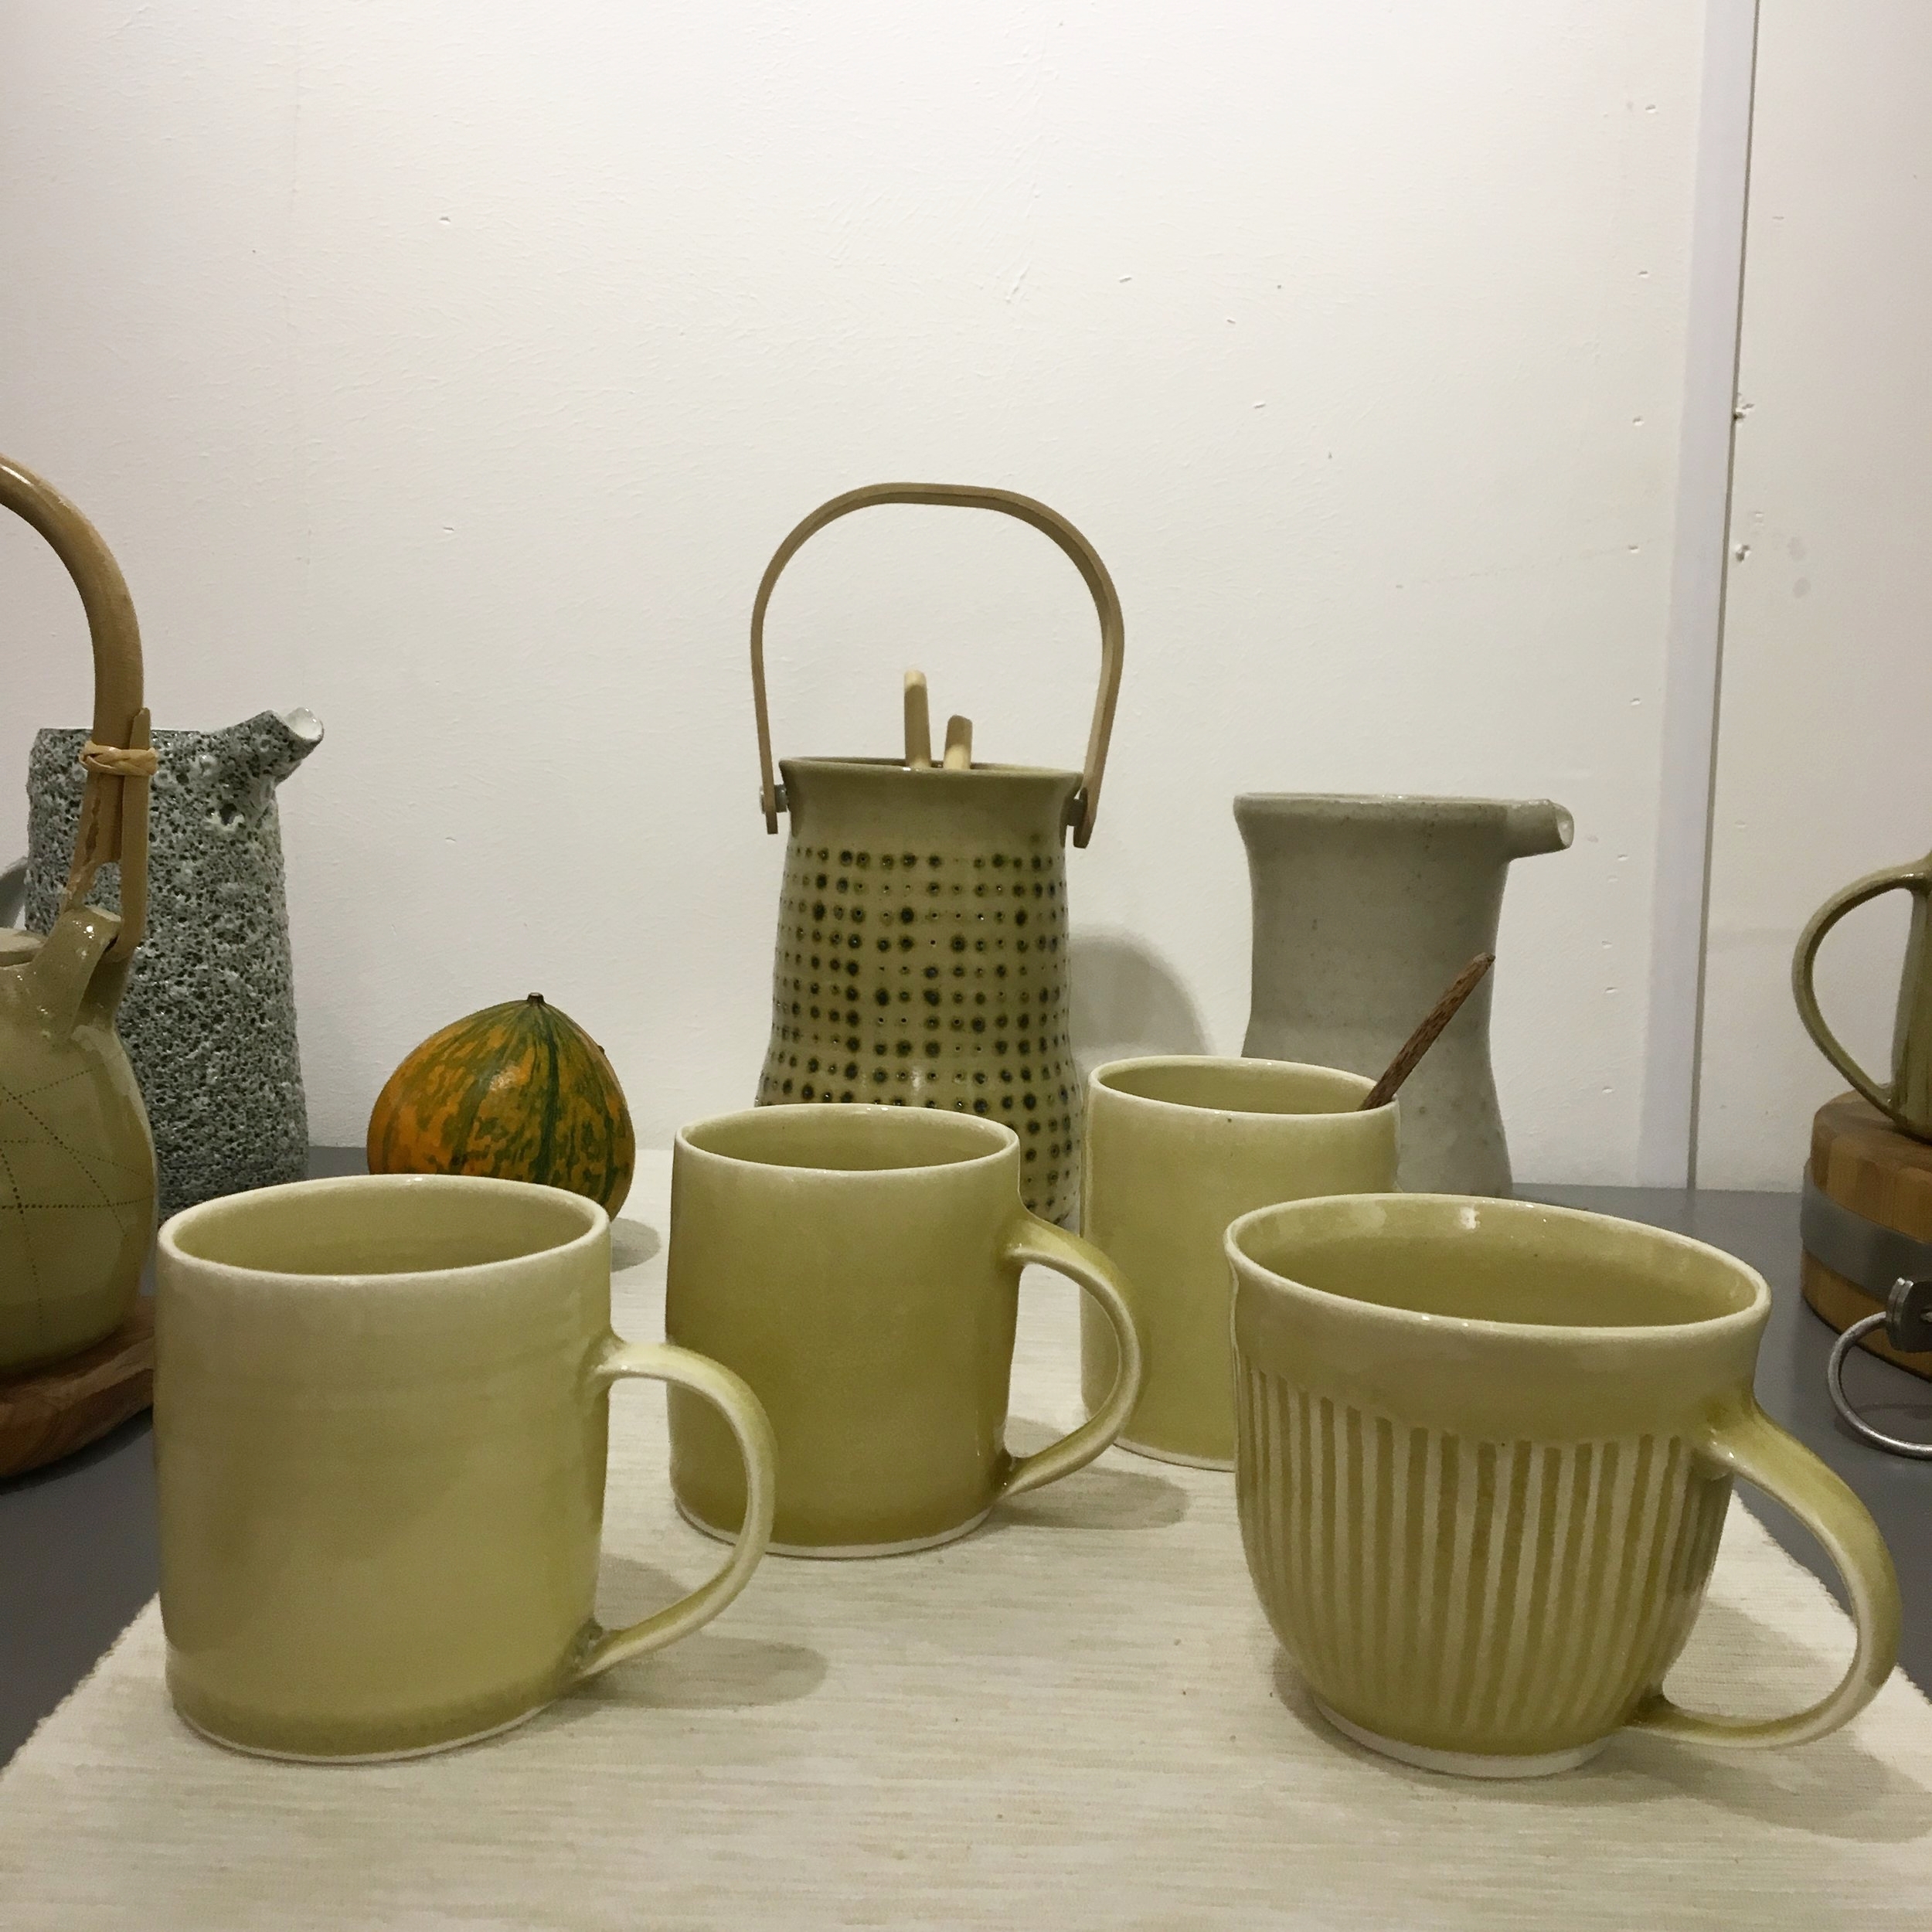 Ceramics by Elizabeth Renton